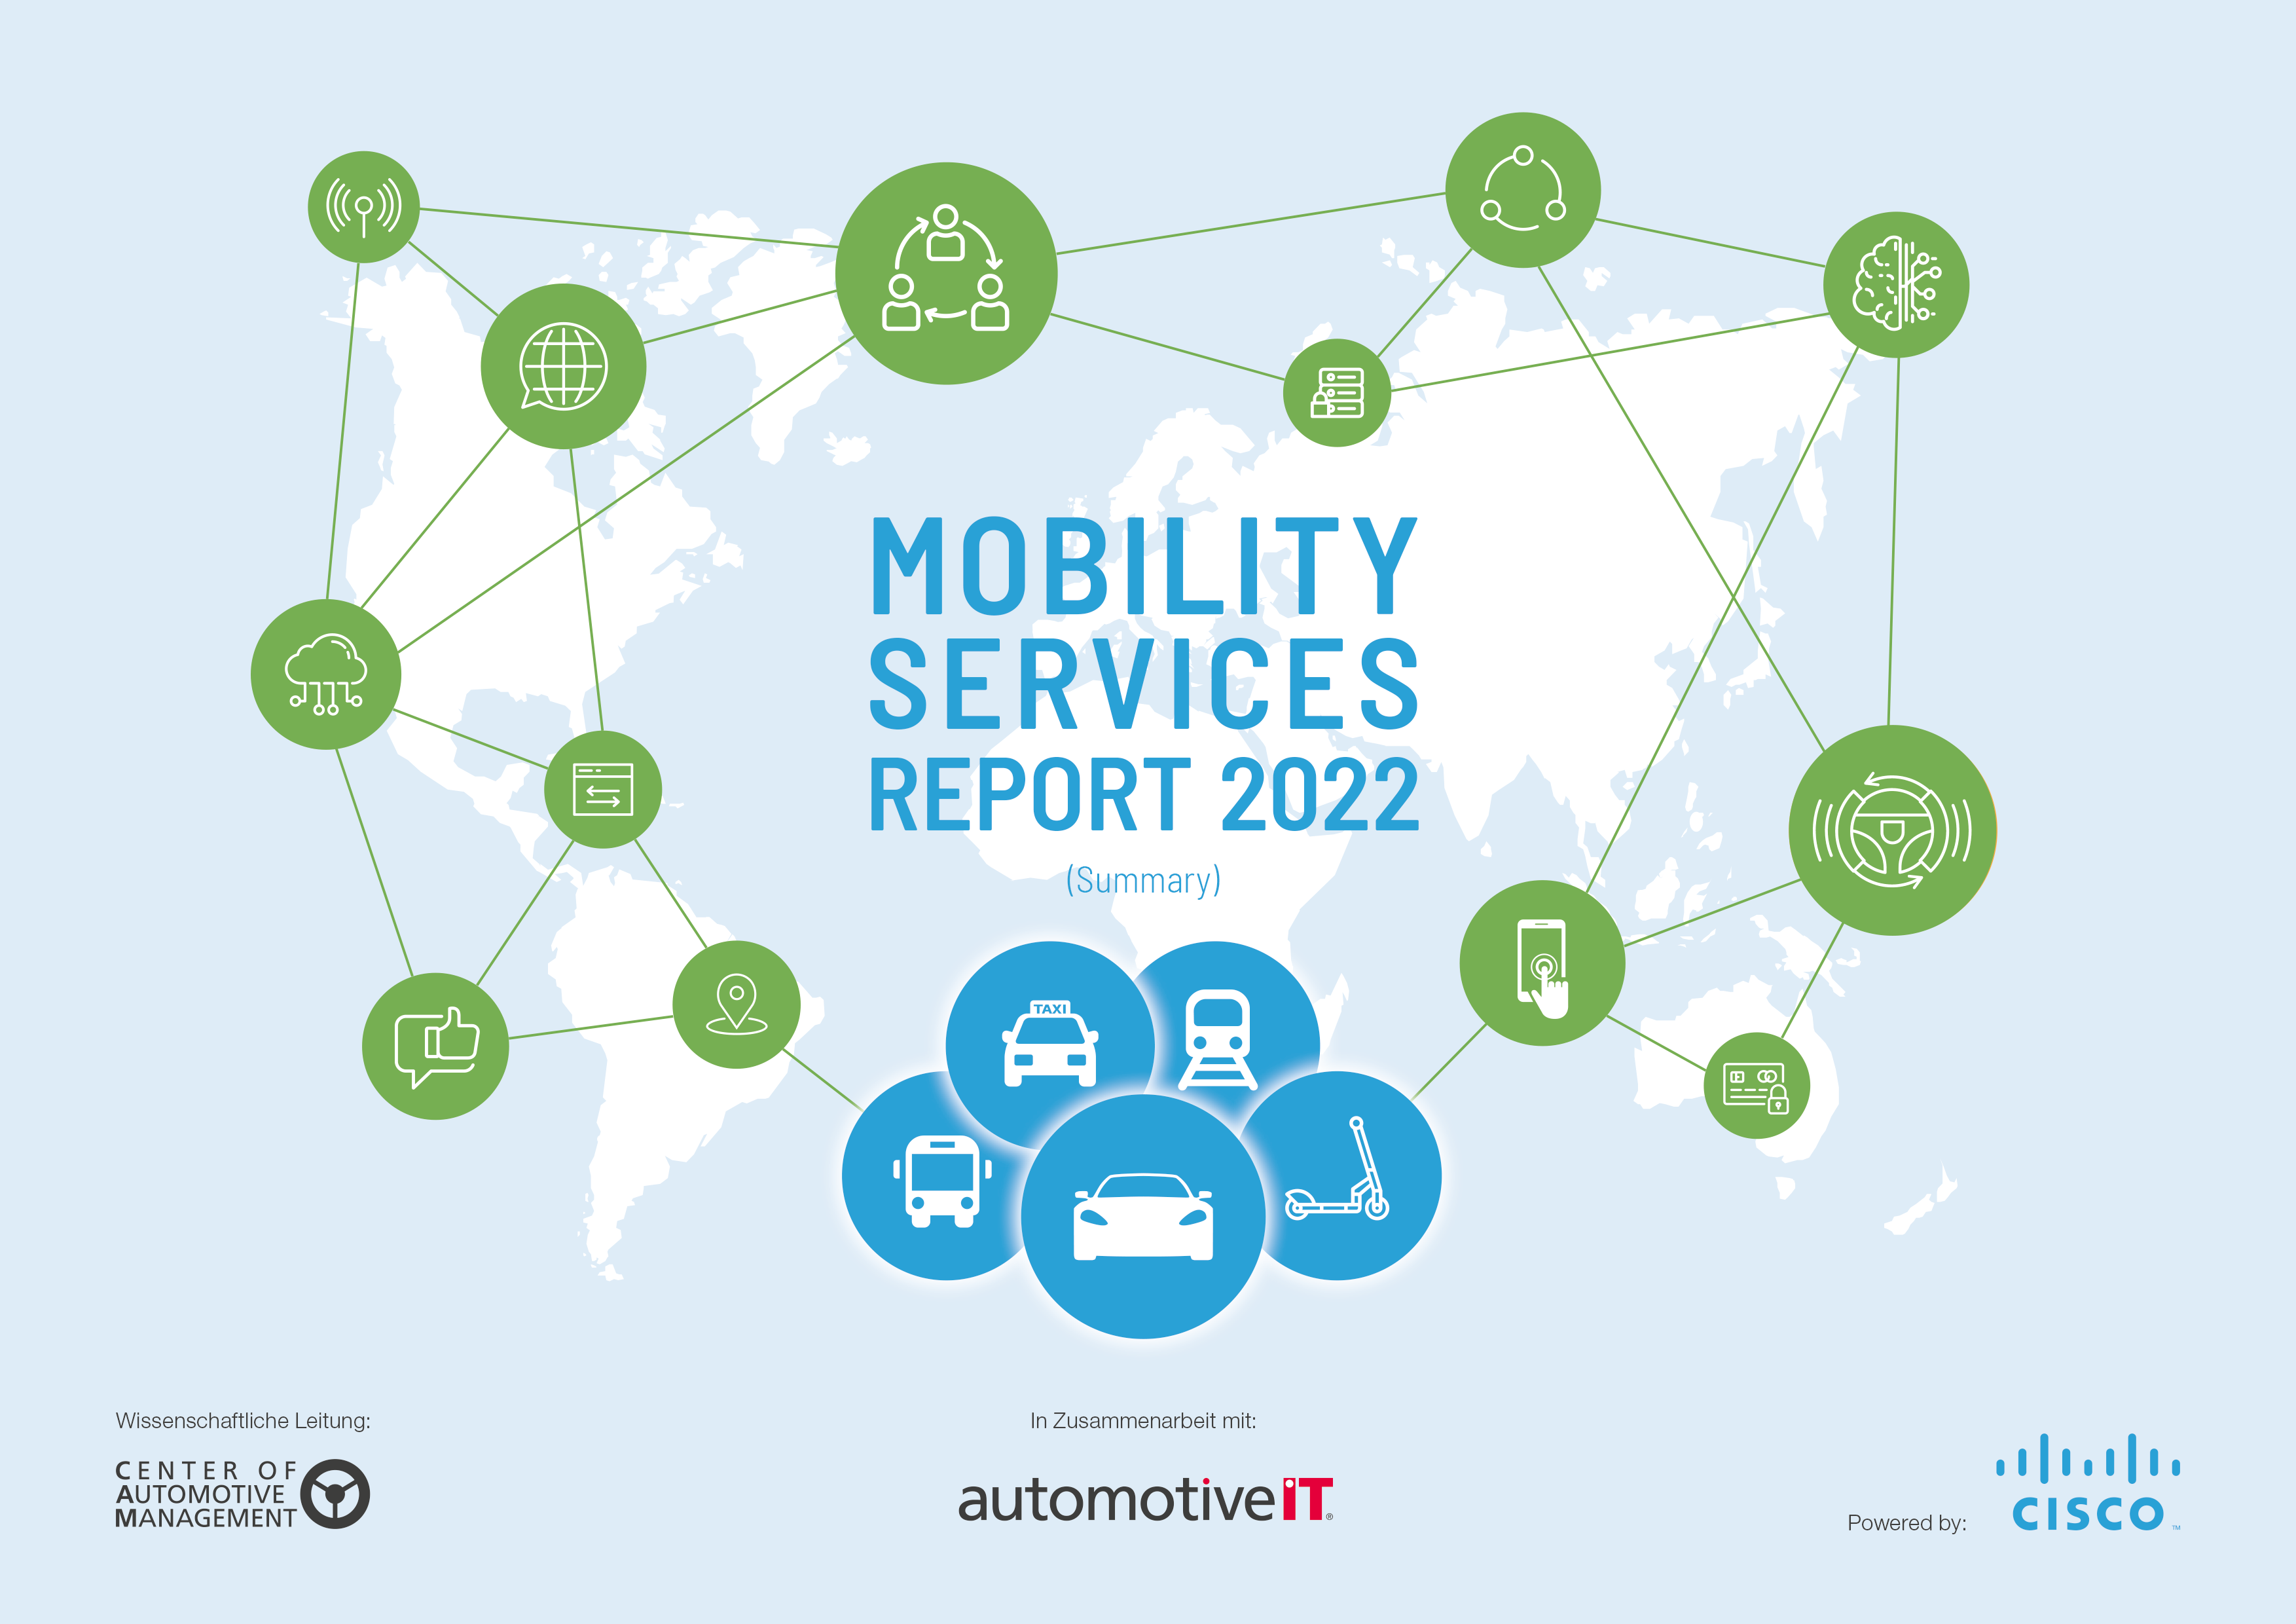 (c) Mobility-services-report.com